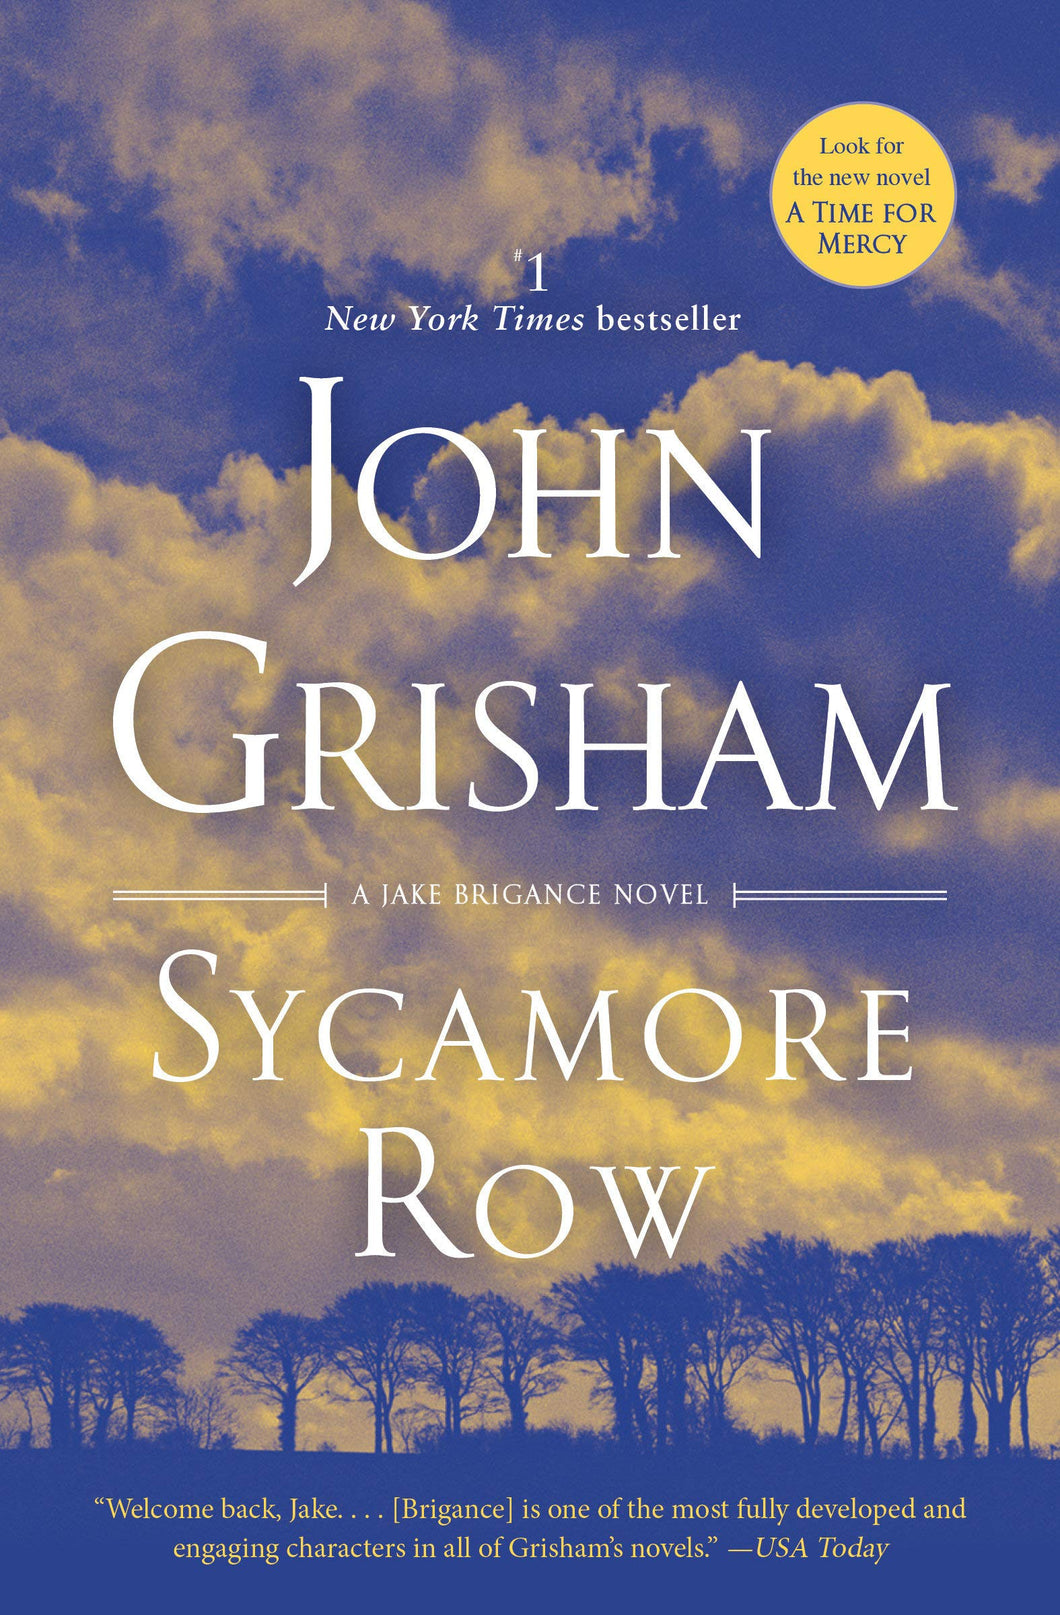 Sycamore Row: A Novel